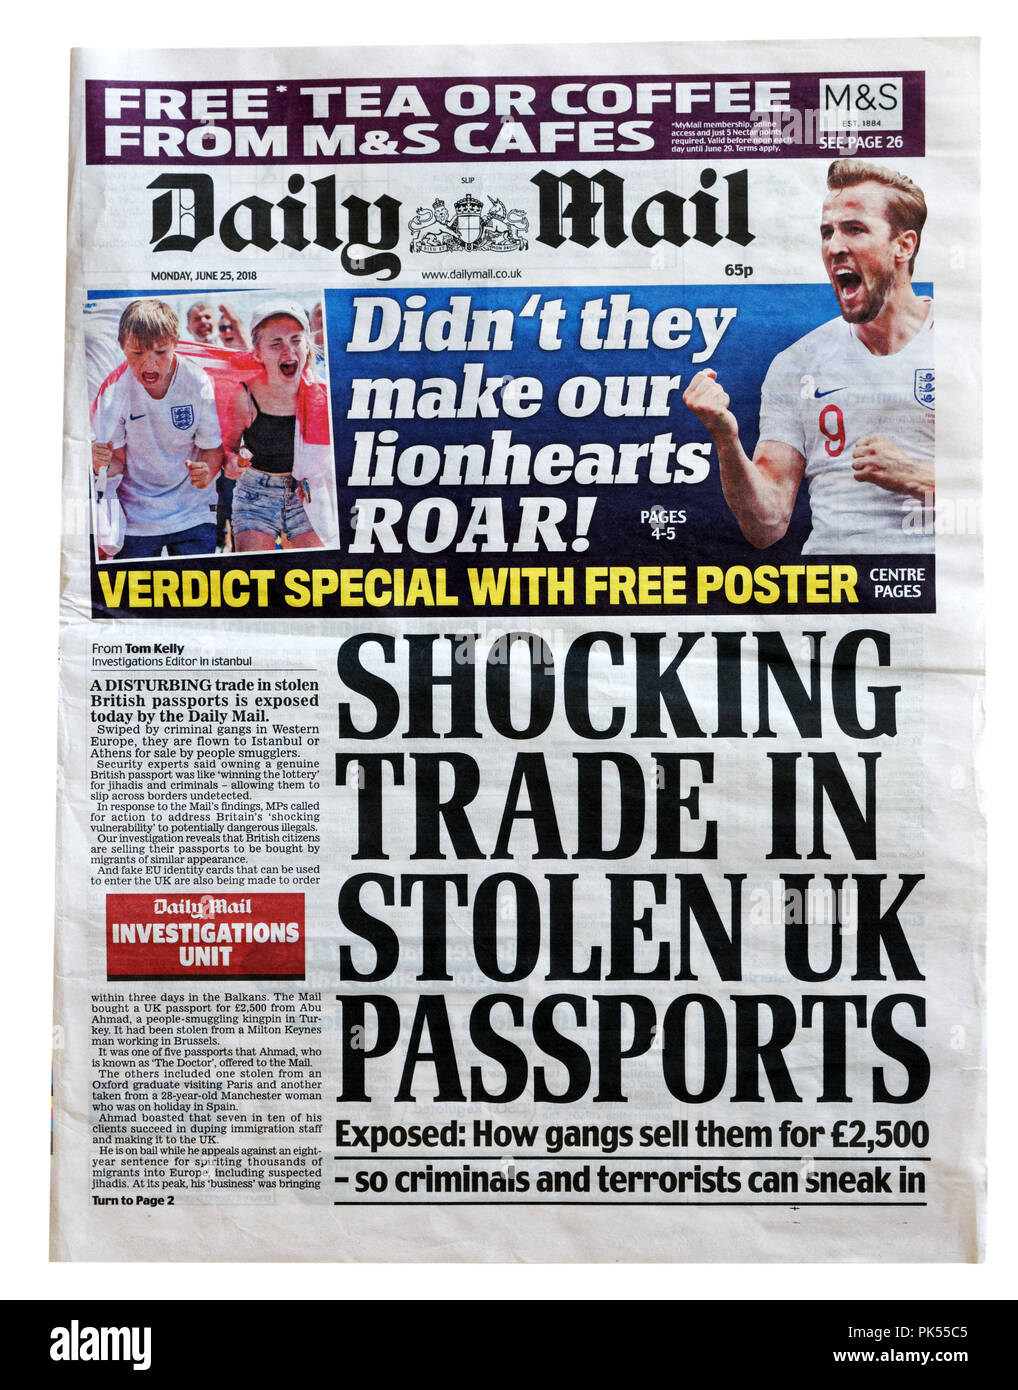 Pagina anteriore del Daily Mail con il titolo scandaloso commercio di furto di passaporti DEL REGNO UNITO, rivelando la vendita di passaporti rubati e ID su social media Foto Stock